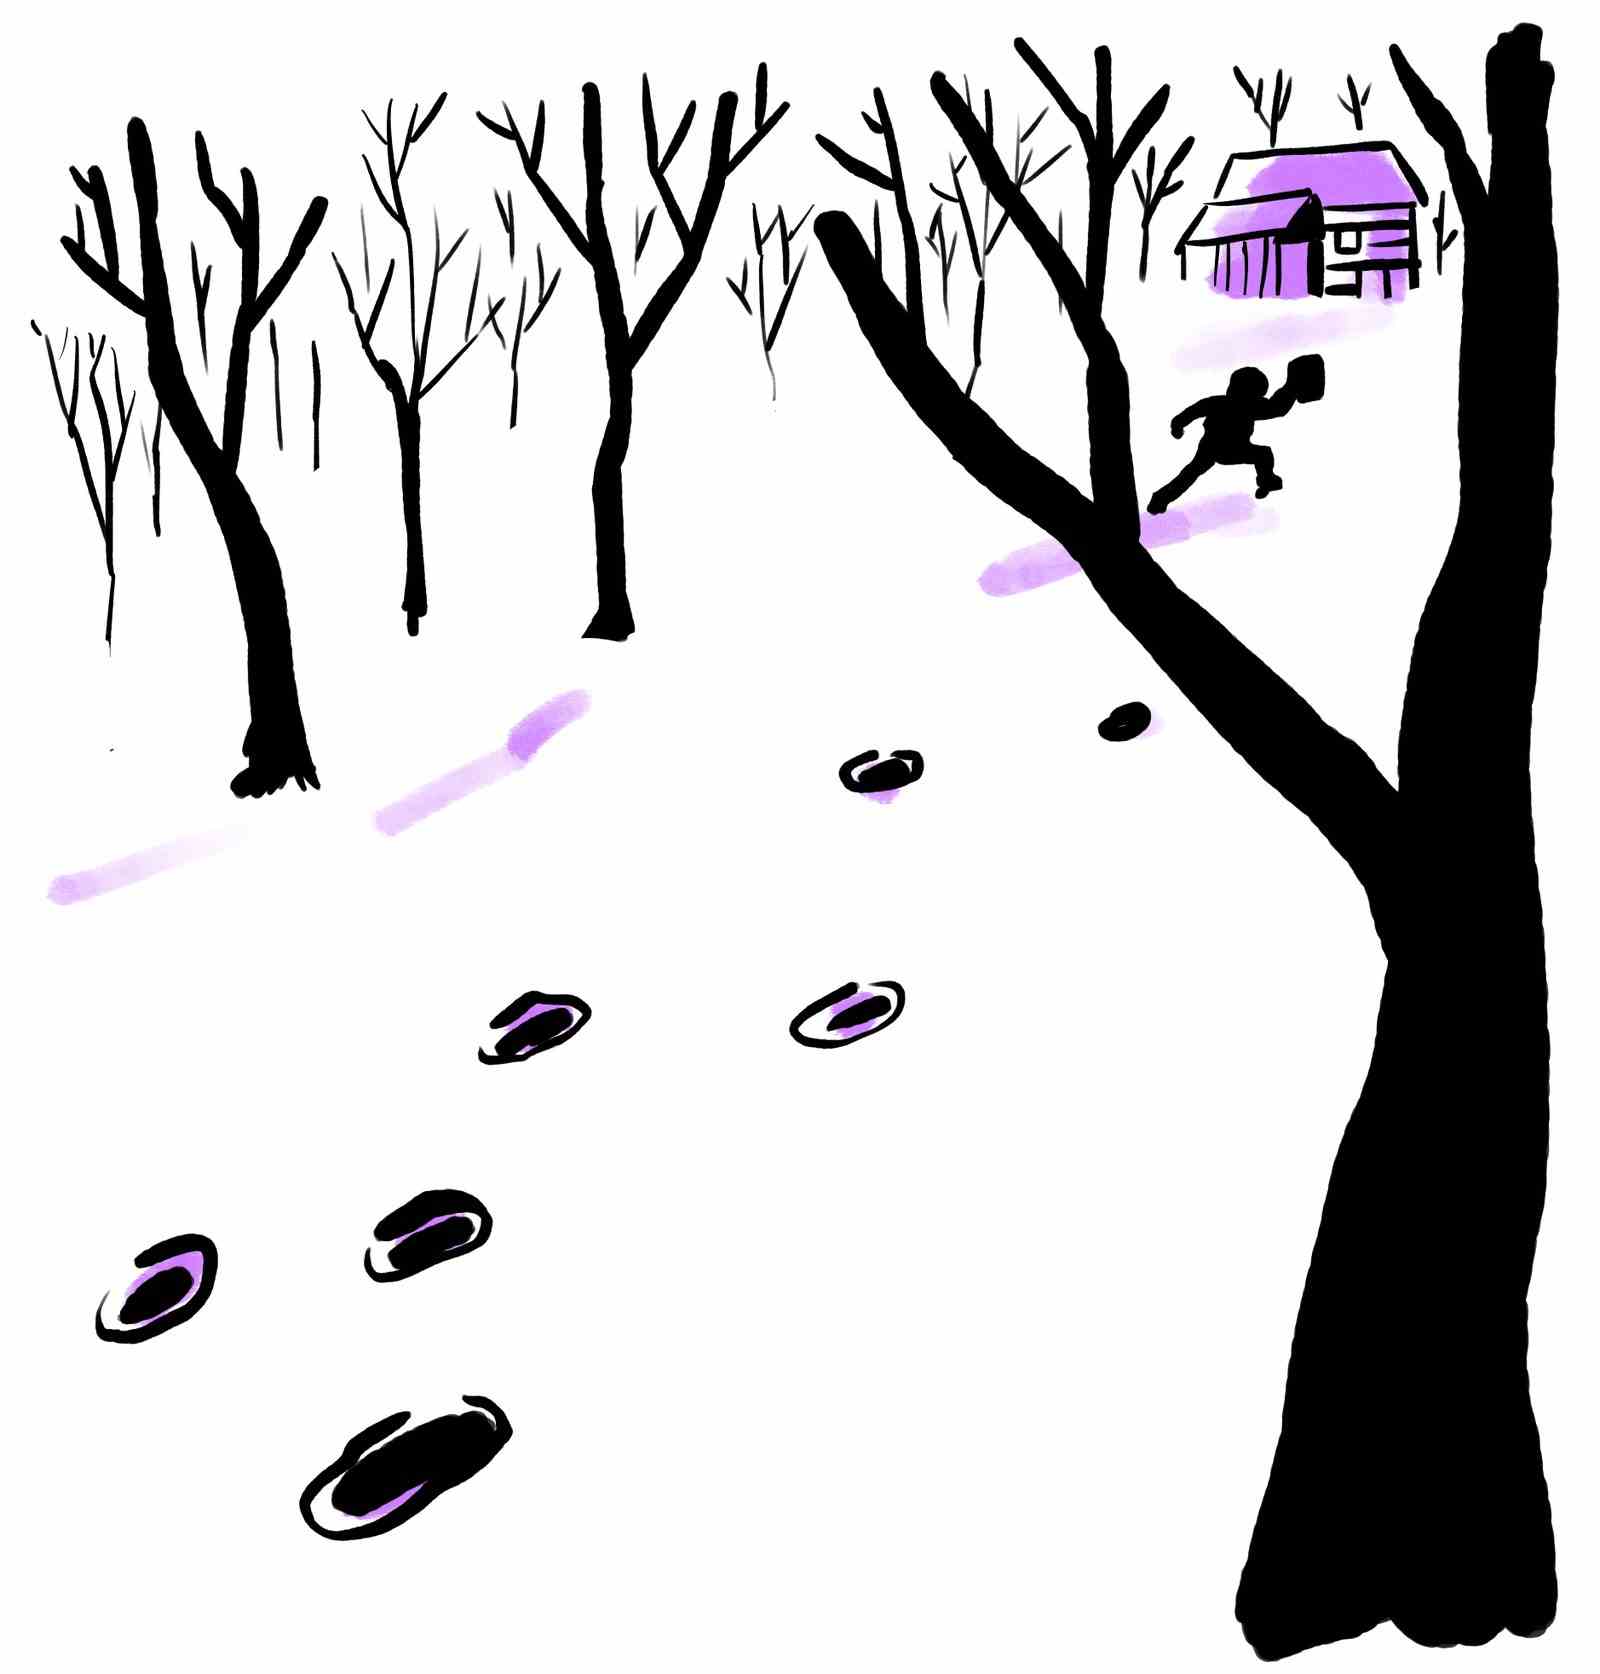 Fußspuren im Schnee, die von einer Person hinterlassen wurden, die zu ihrer Hütte im Wald lief.